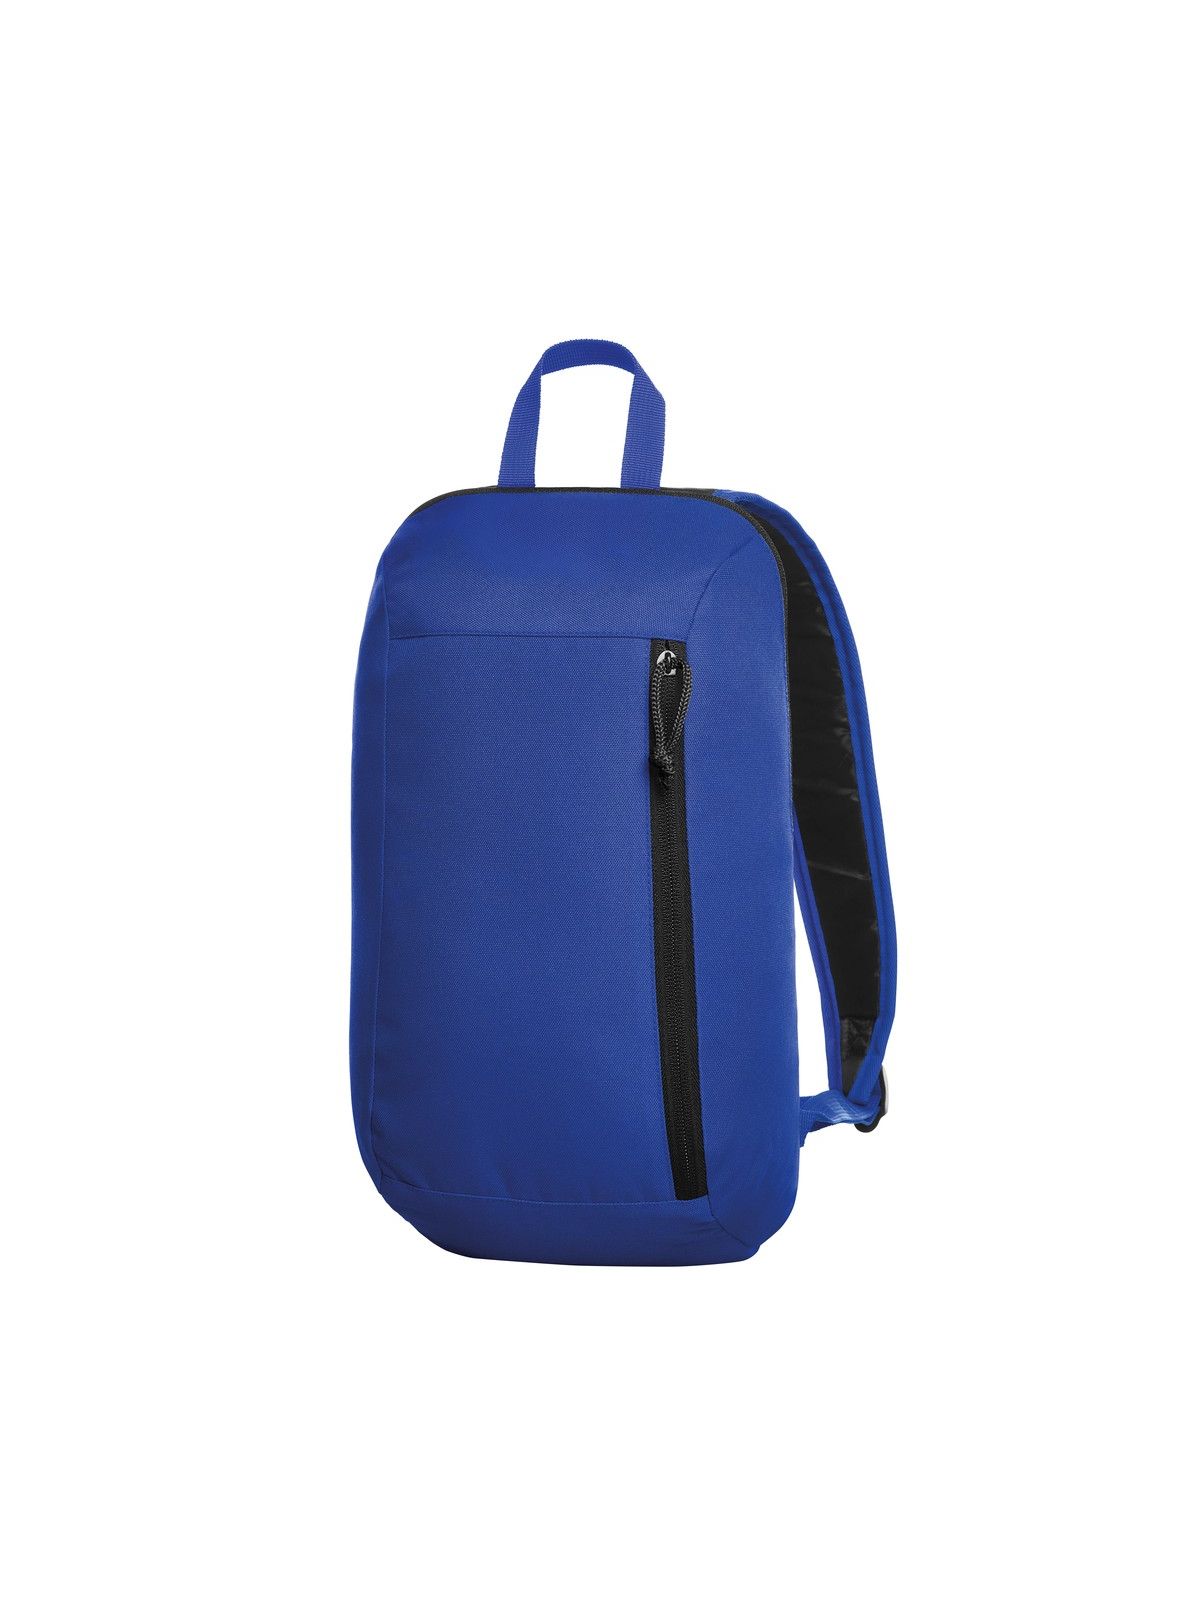 flow-backpack-royal-blue.webp